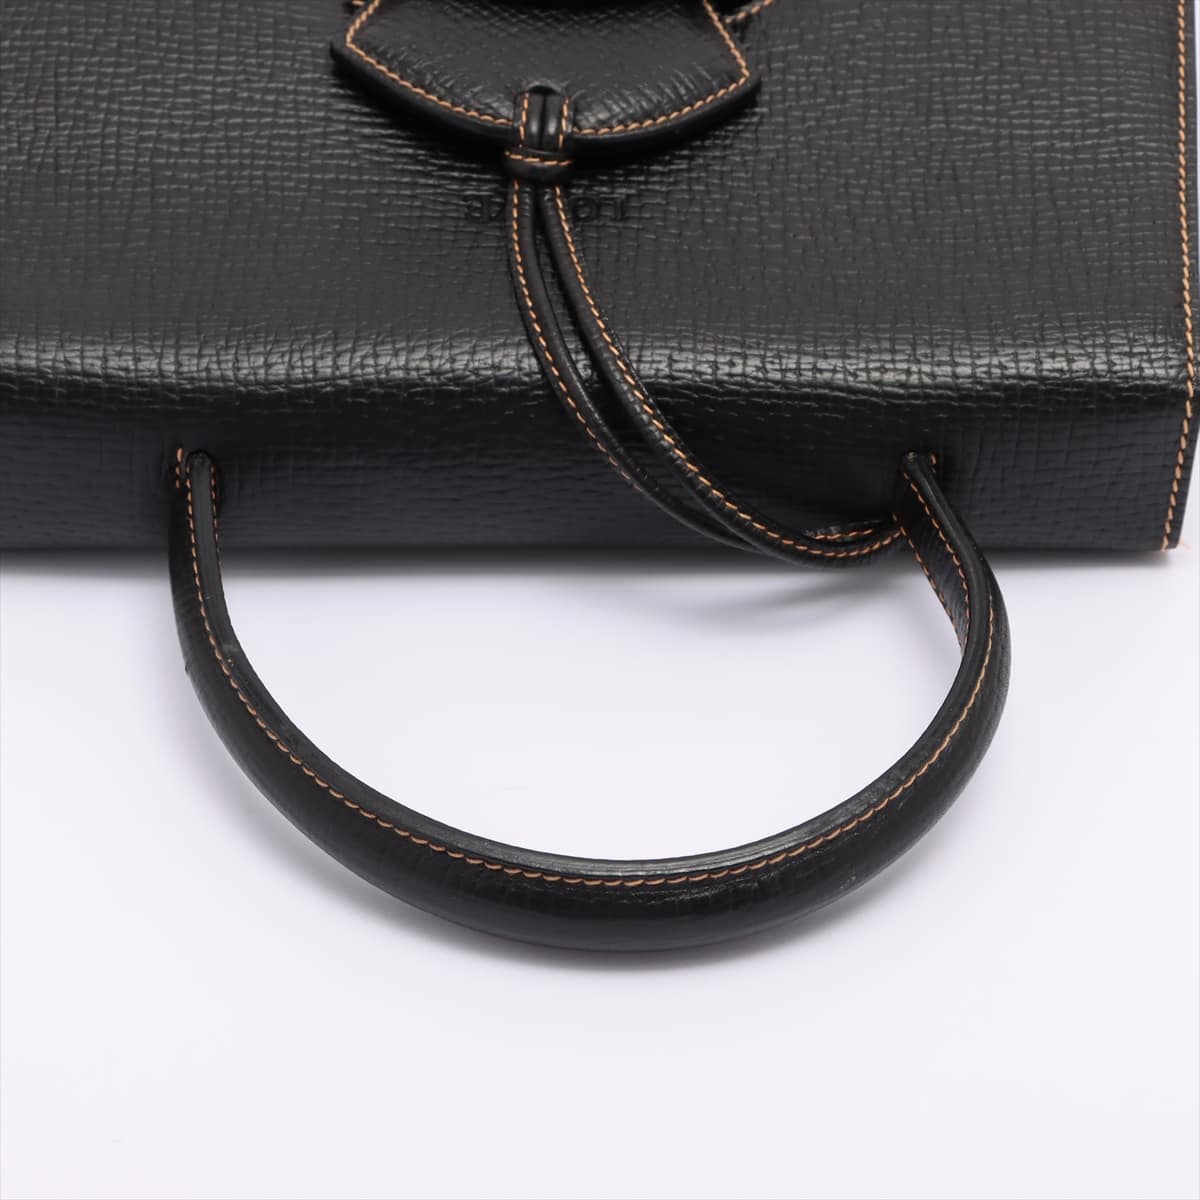 Loewe Barcelona Leather 2way handbag Black